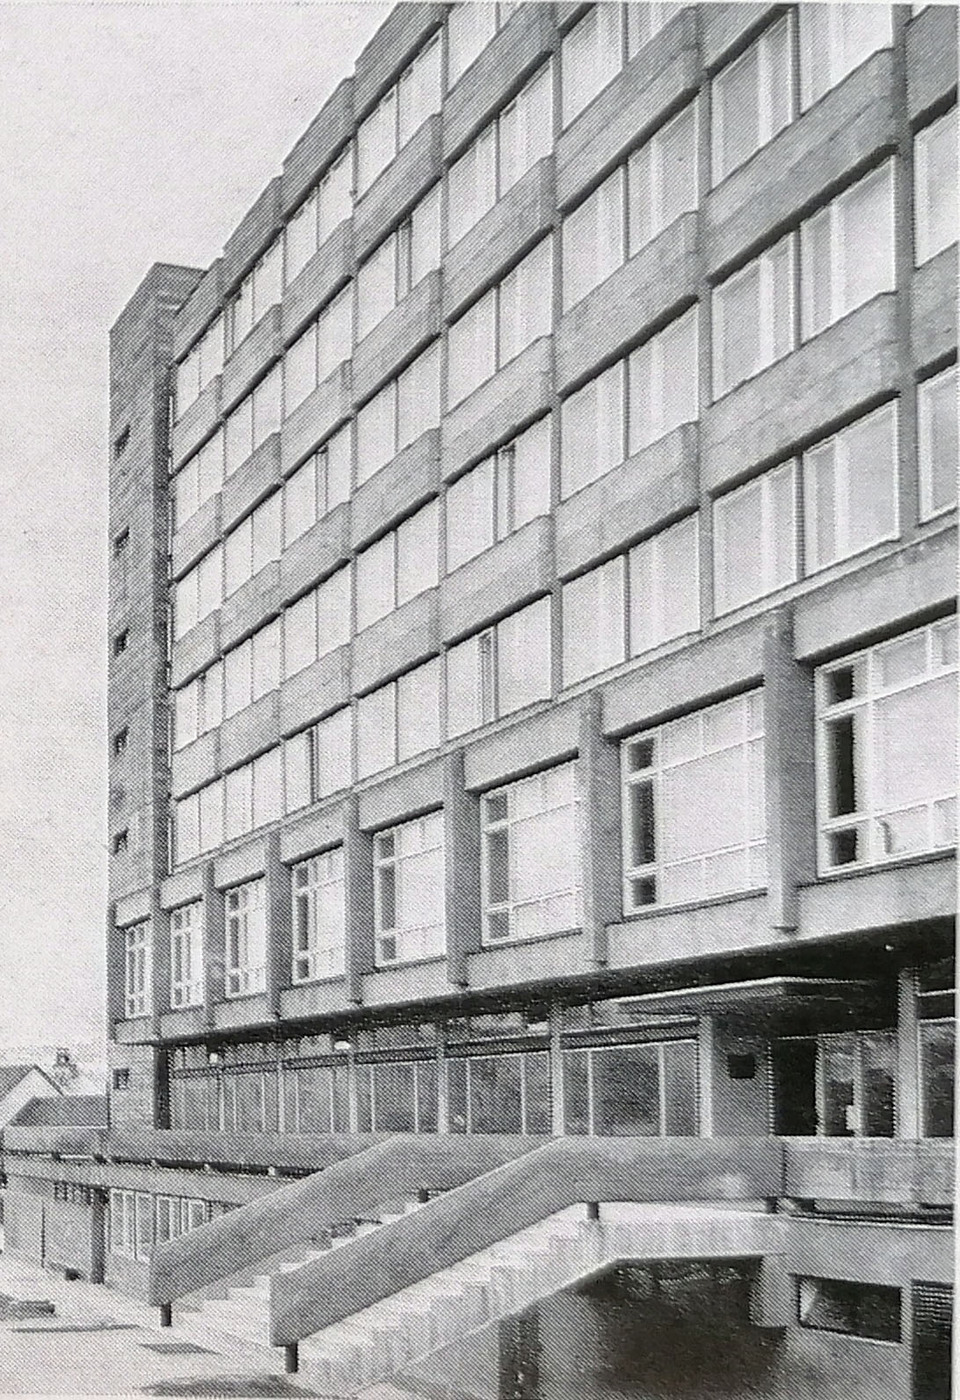 Az épület archív fényképe. Forrás: Magyar építészet 1945-1970. Corvina, Budapest, 1972.